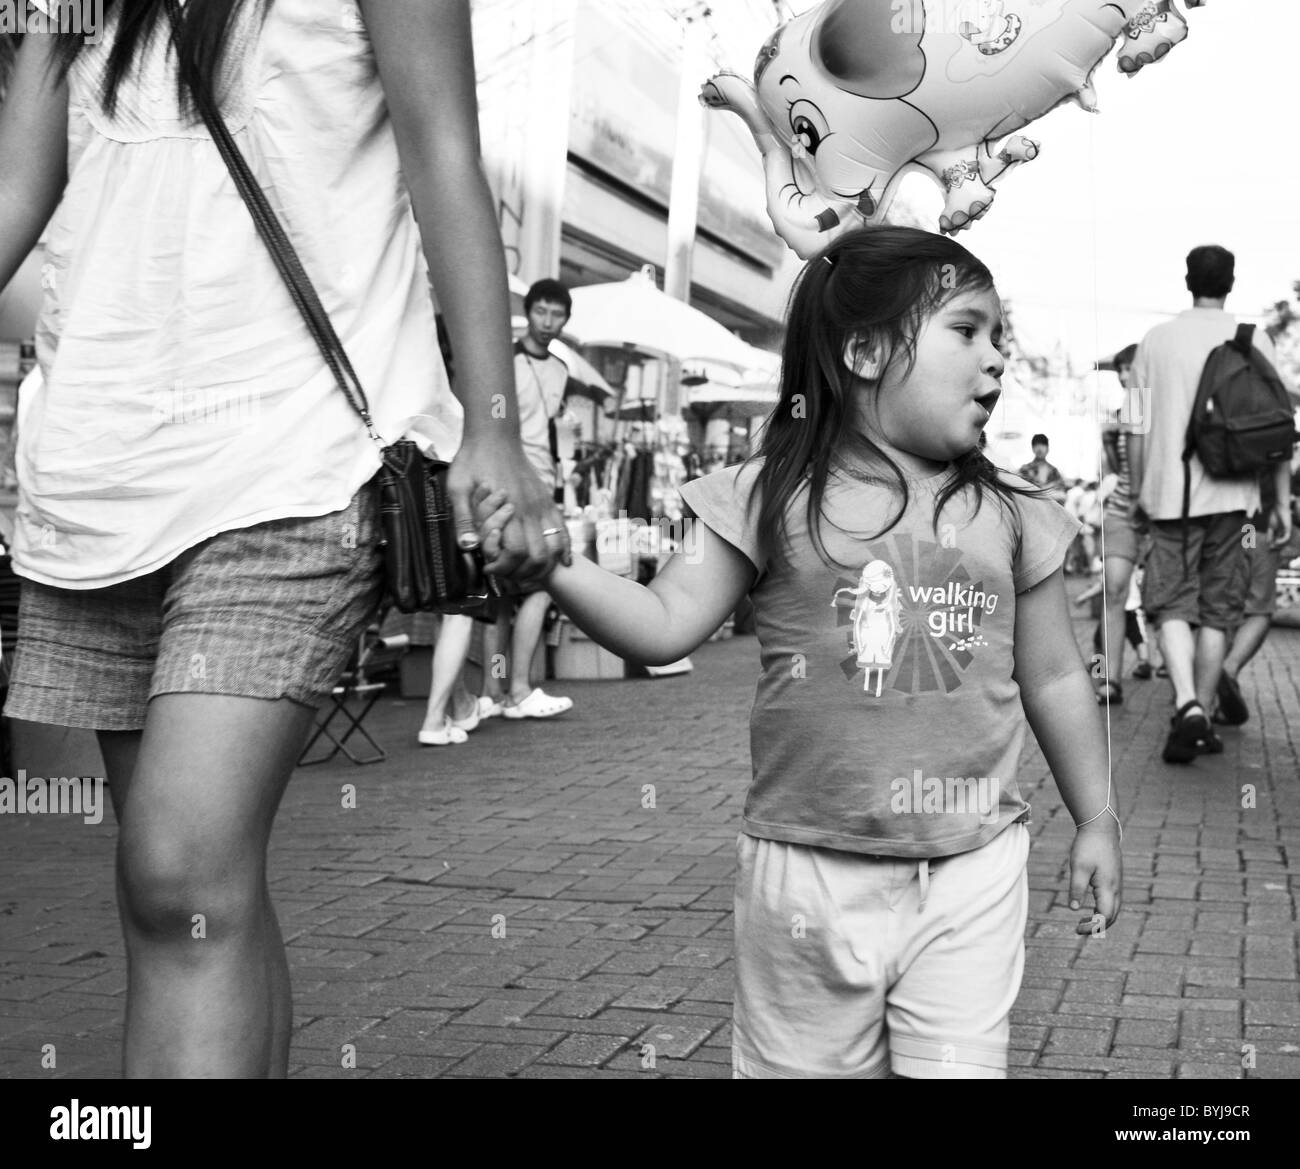 Photographie noir et blanc photographie candide d'une jeune fille thaïe dans une rue Banque D'Images